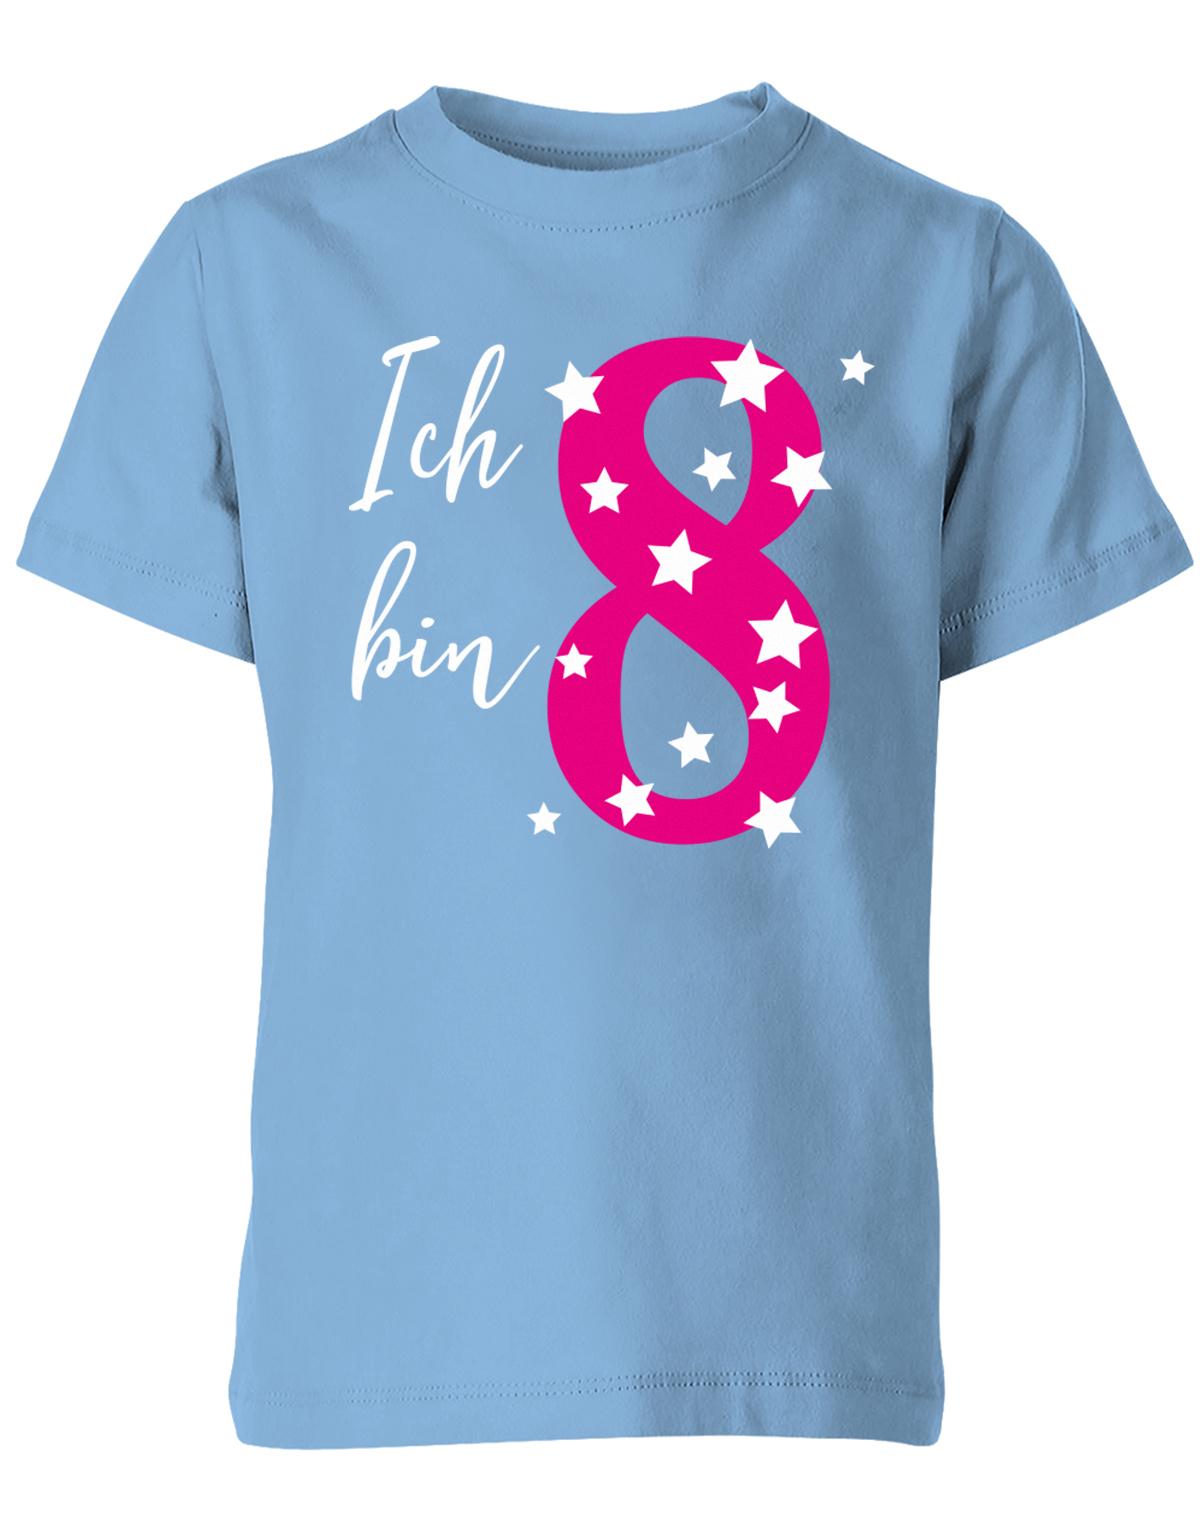 ich-bin-8-sterne-sternchen-geburtstag-kinder-shirt-hellblau